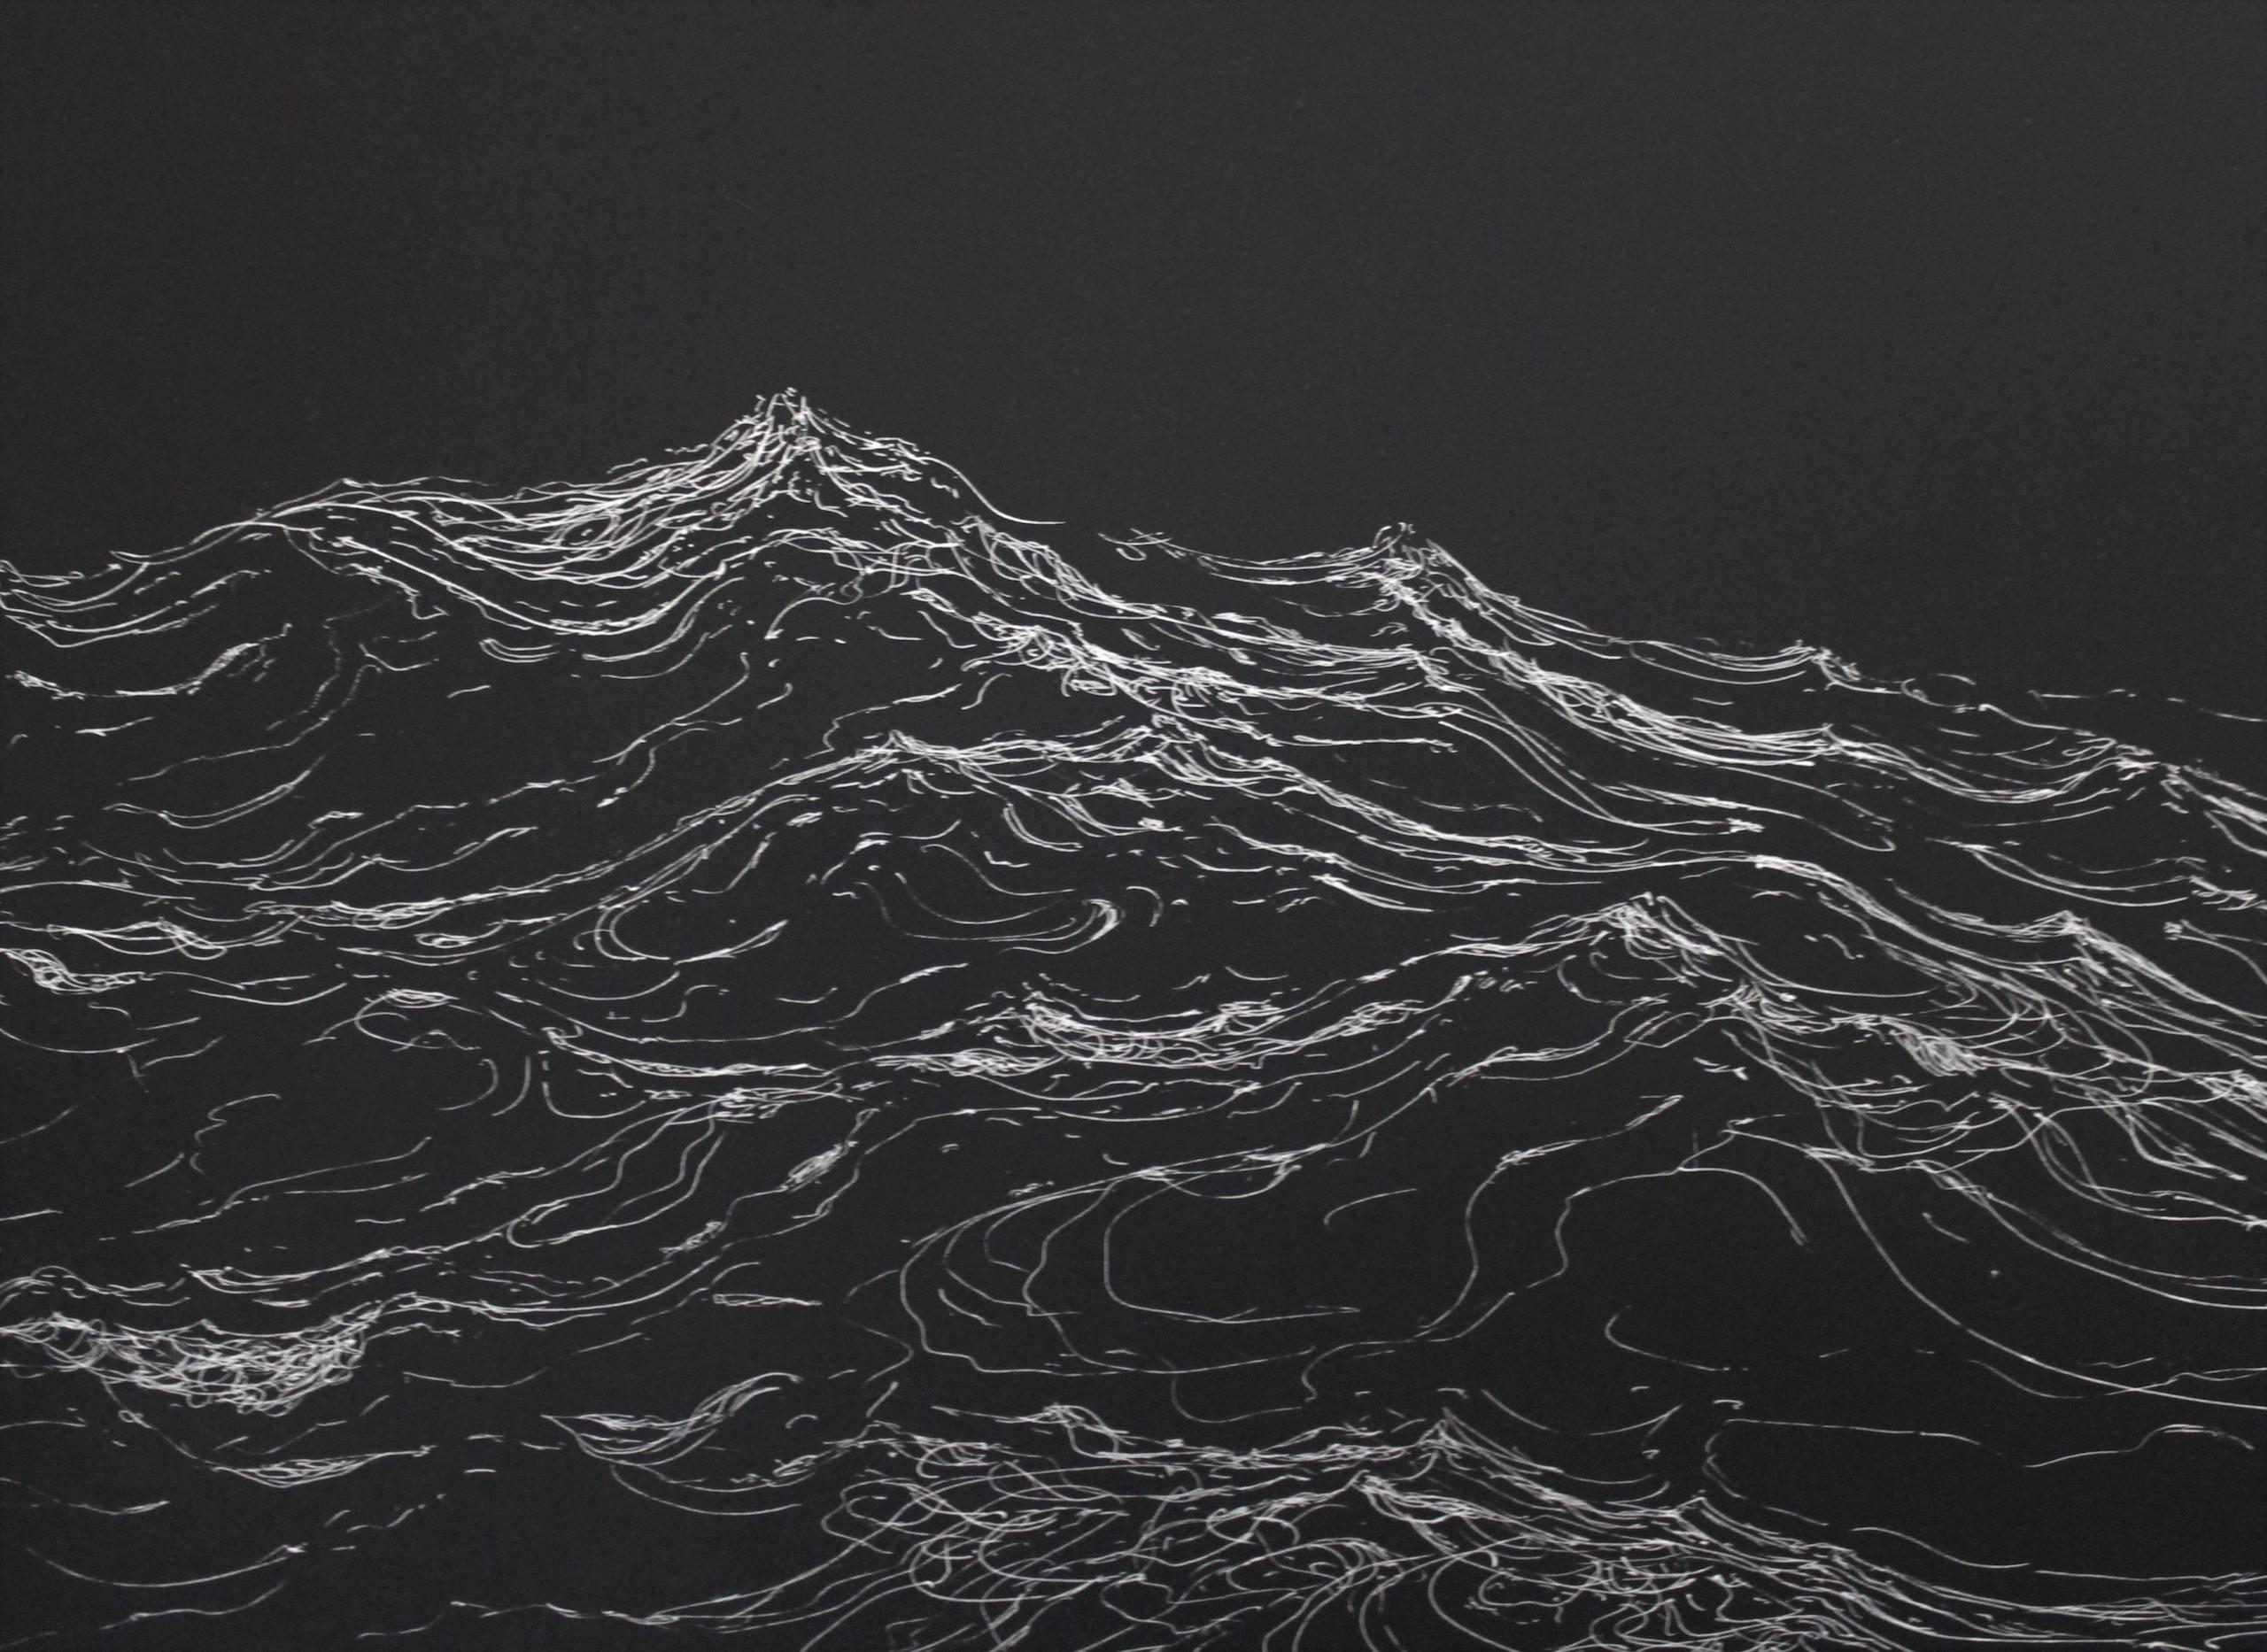 Exterme currents by Franco Salas Borquez - Seascape, ocean, waves, black For Sale 2